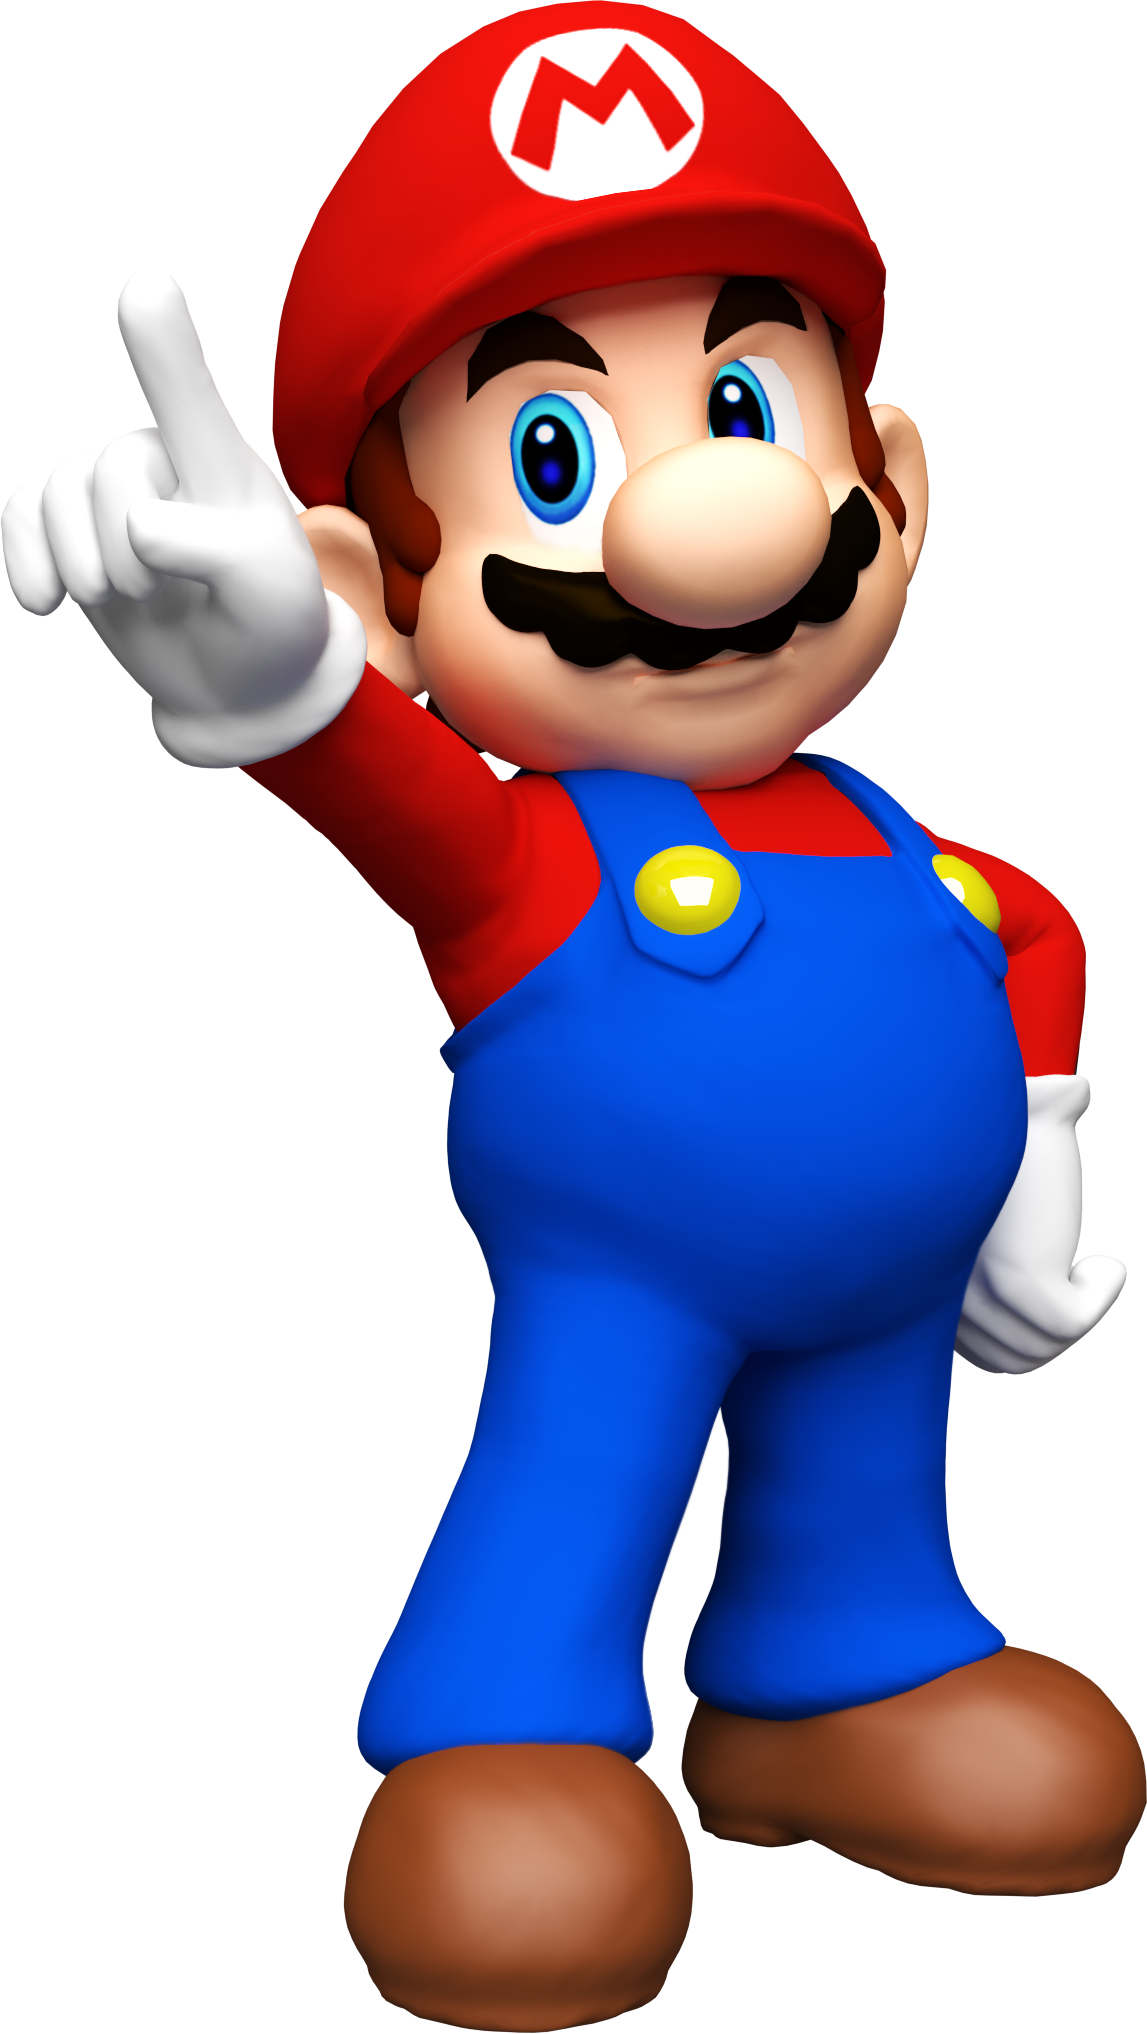 Mario super mario.png